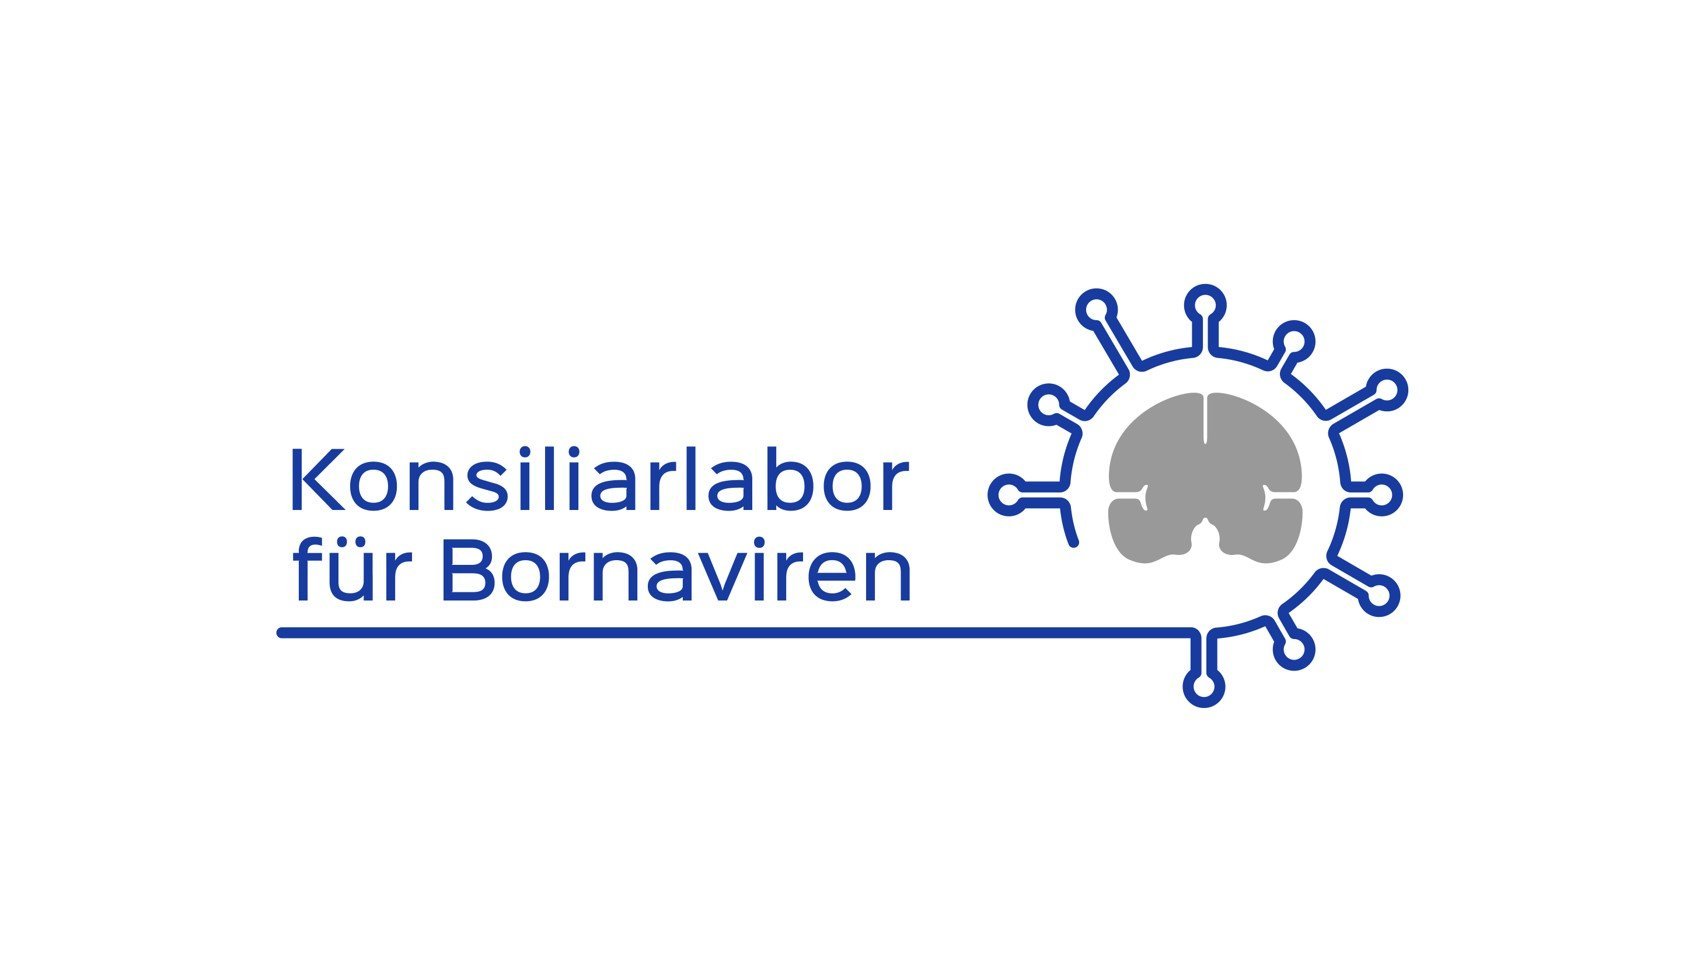 Logo Konsiliarlabor Bornaviren: Im linken Teil des Logos steht in blauer Schrift Konsiliarlabor, in einer zweiten Reihe für Bornaviren. Darunter eine blaue Linie, aus der sich im rechten Teil des Bildes eine Virushülle um die schematische graue Darstellung eines Gehirnes legt.